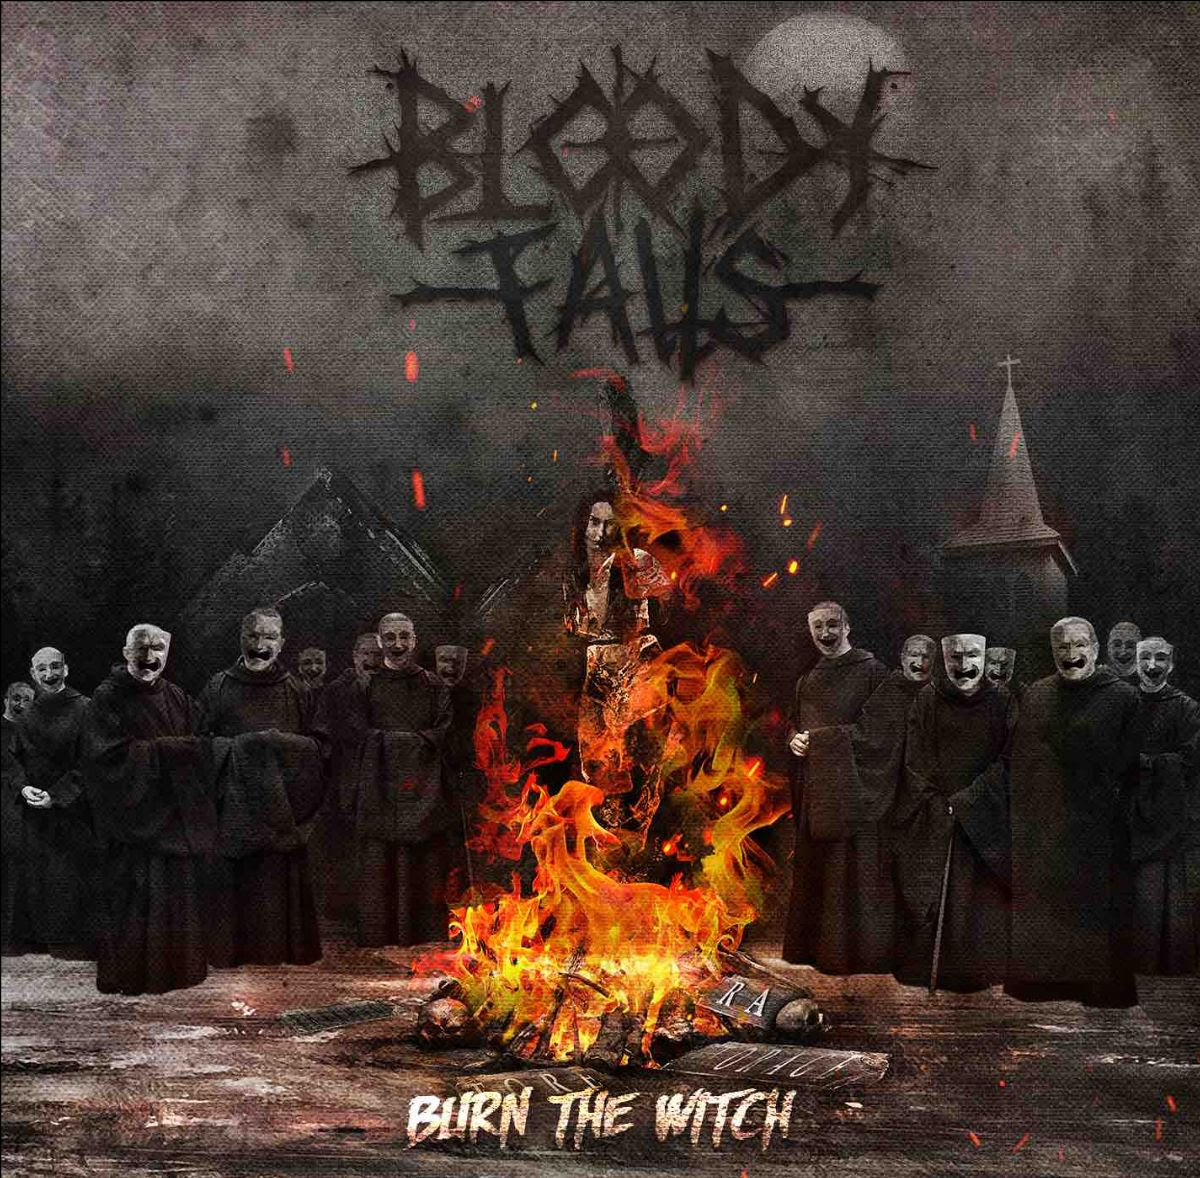 Bloody Falls estrenan su nuevo disco “Burn The Witch” en directo a través de Youtube